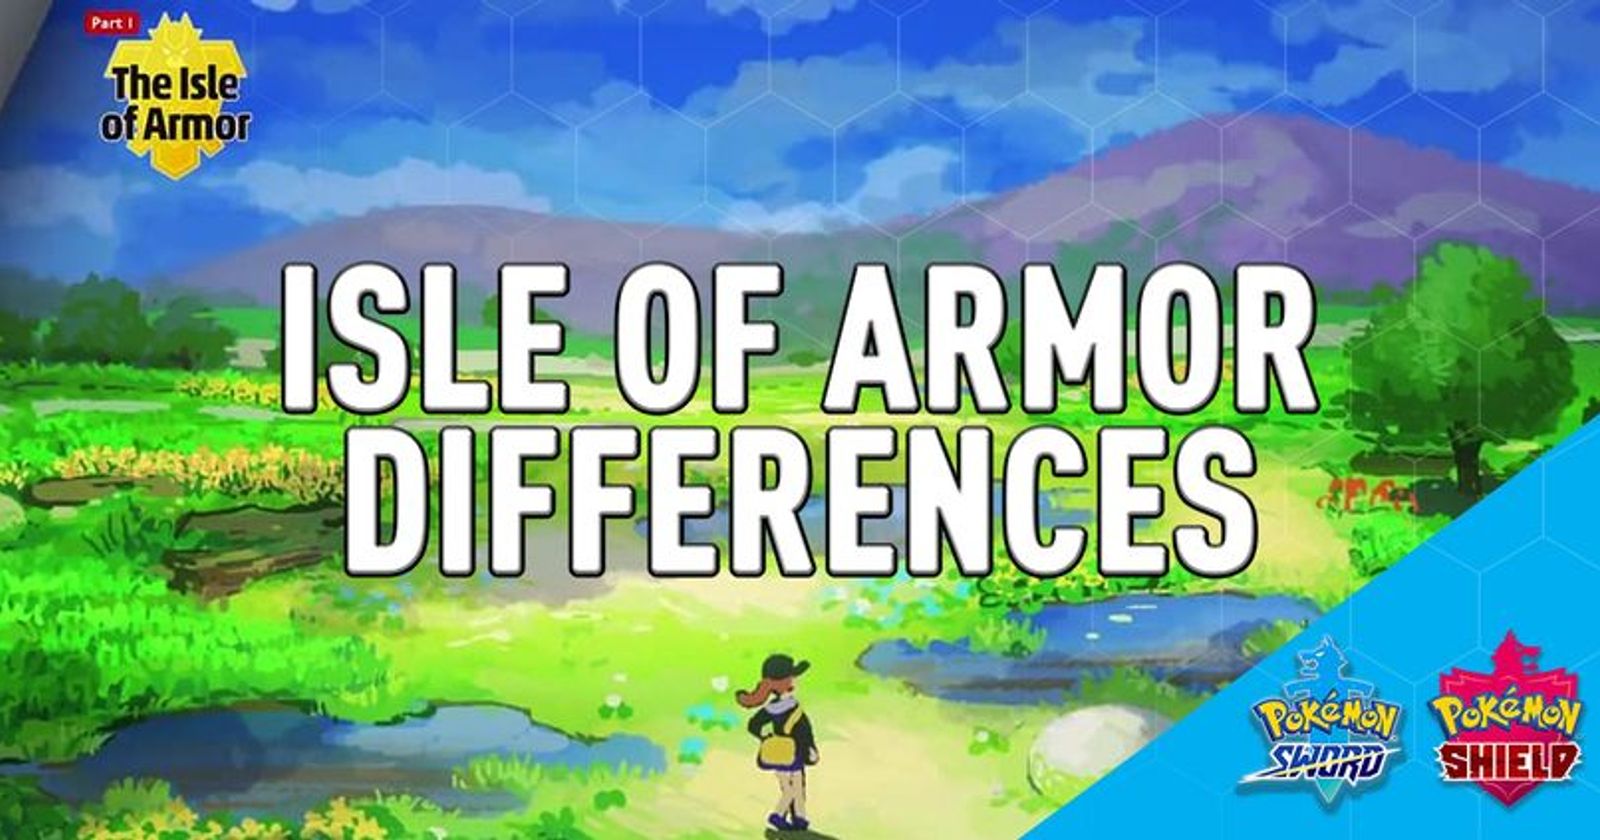 Isle of Armor, a parte 1 do DLC de Pokémon Sword e Shield, vale a